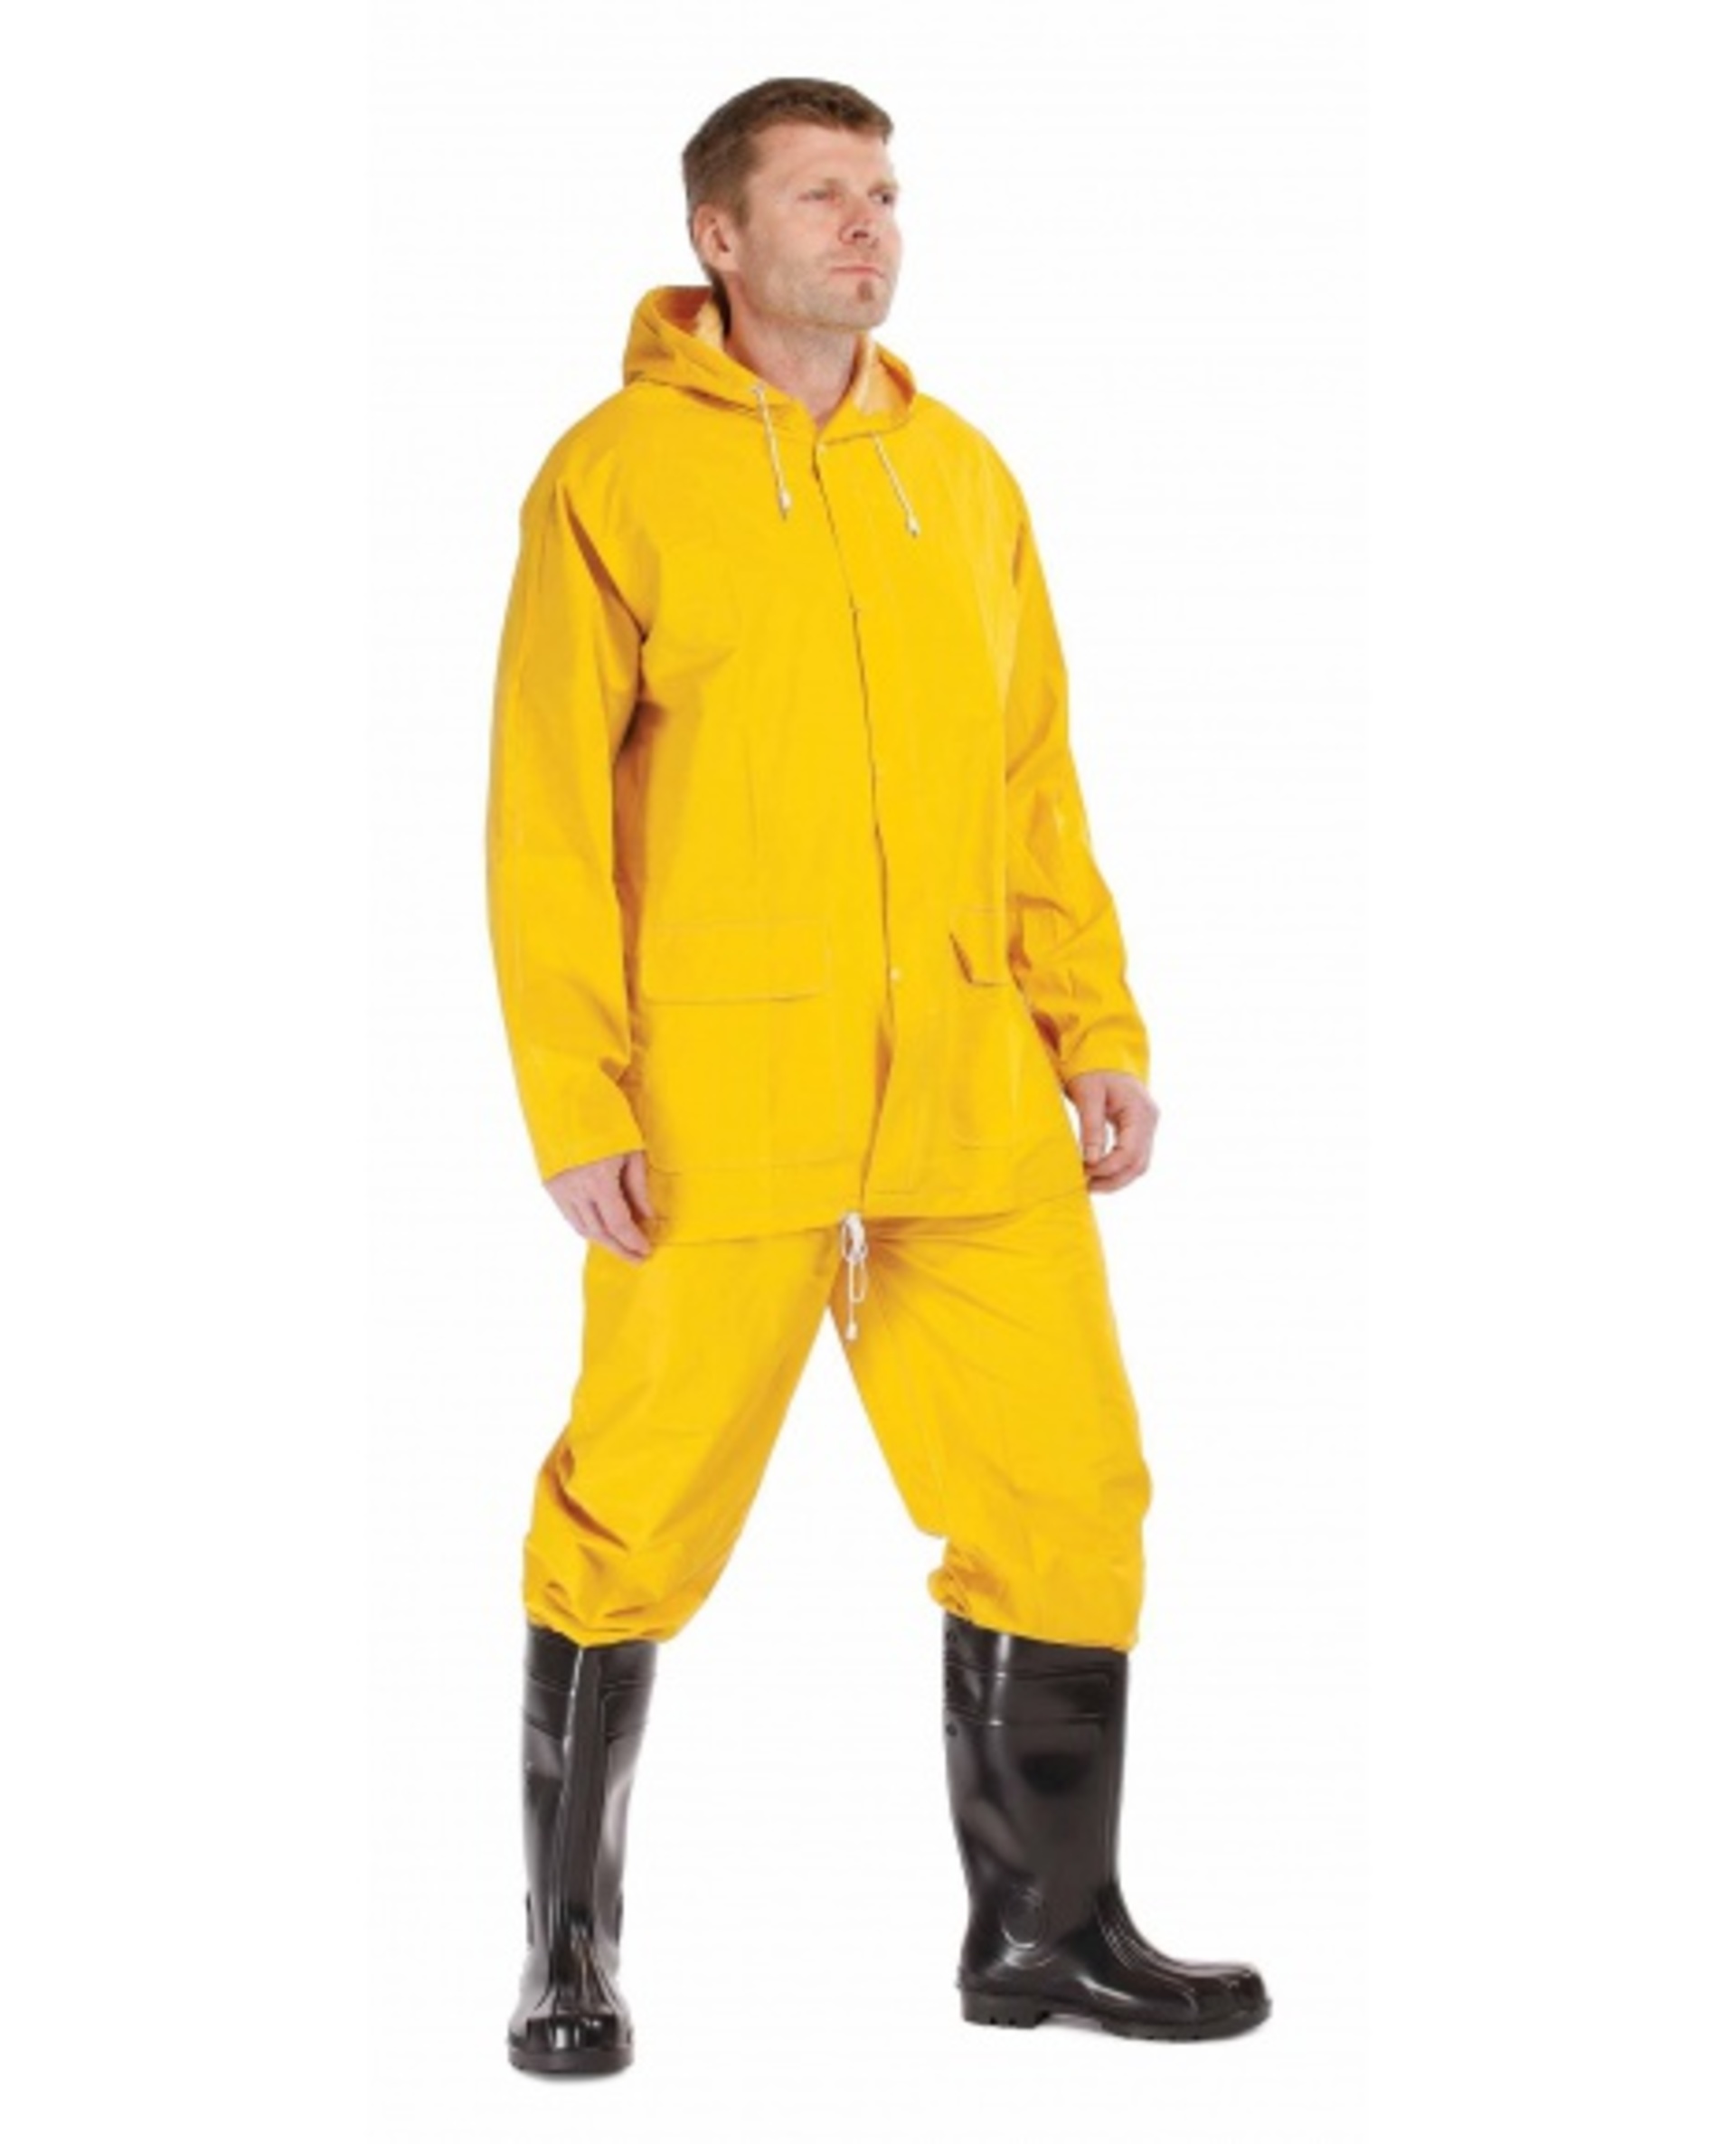 Cerva HYDRA Oblek nepromokavý žlutá 3XL + Bezplatné vrácení zboží